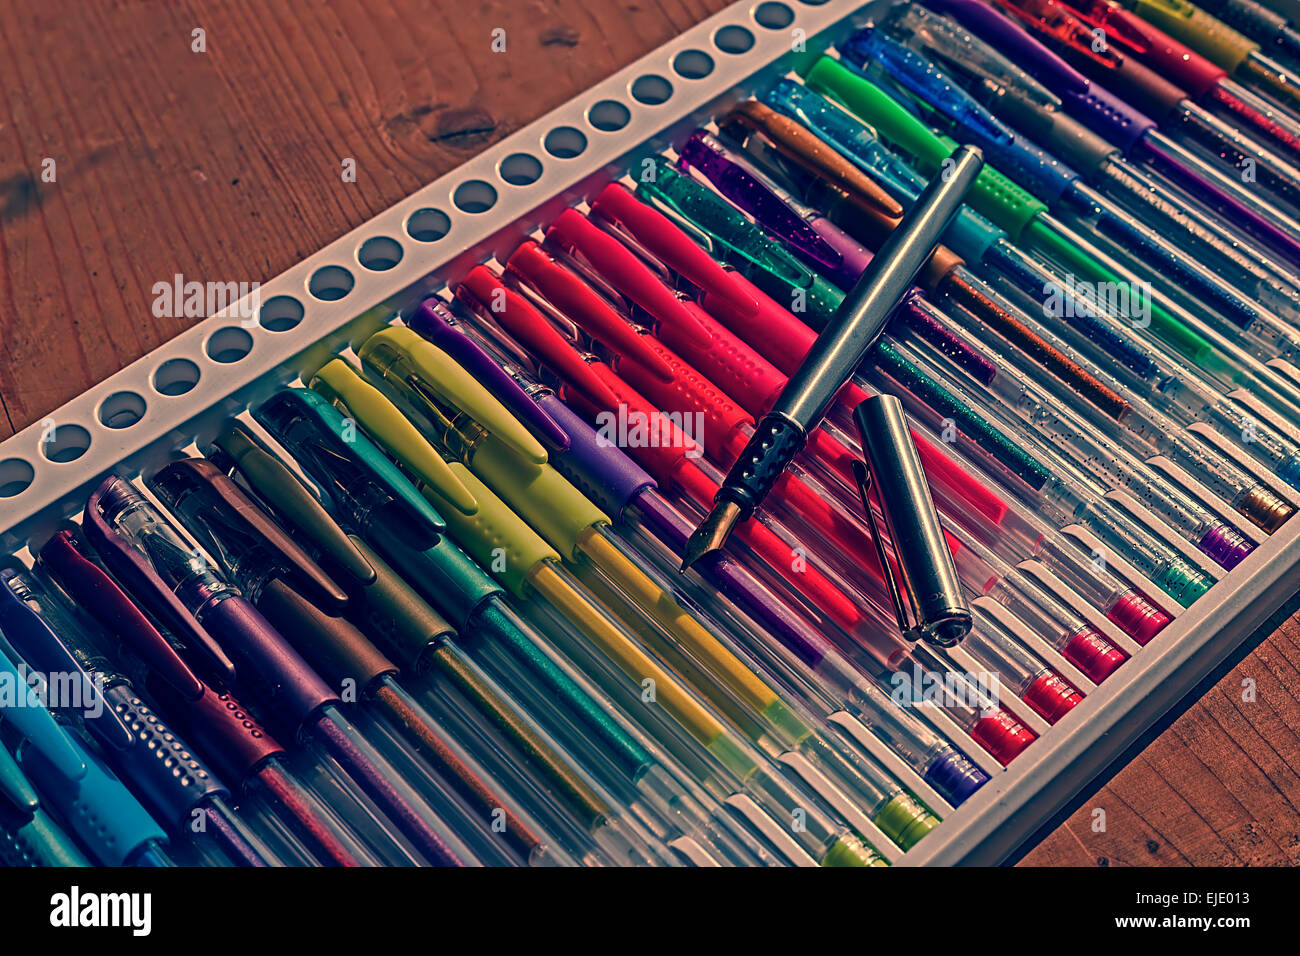 De crayons en look vintage placé sur une table en bois. Banque D'Images